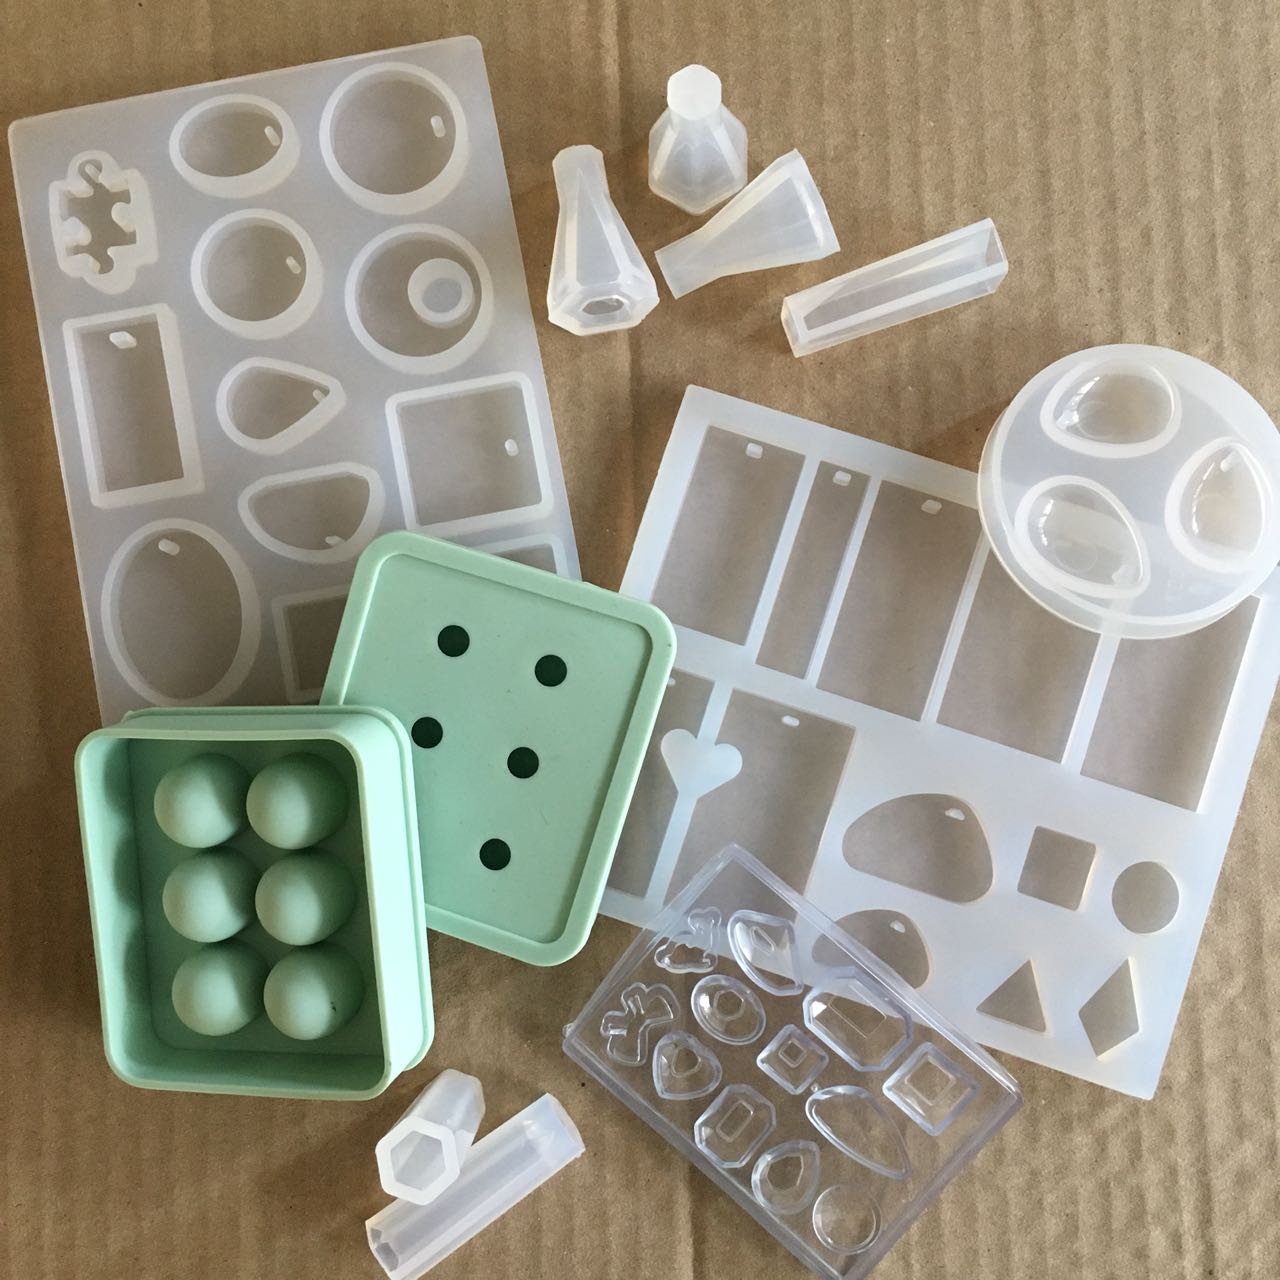 Kit de moldes de resina de silicona, 20 piezas, moldes de resina epoxi  incluyendo esfera, cubo, pirámide, cuadrado, redondo, utilizado para crear